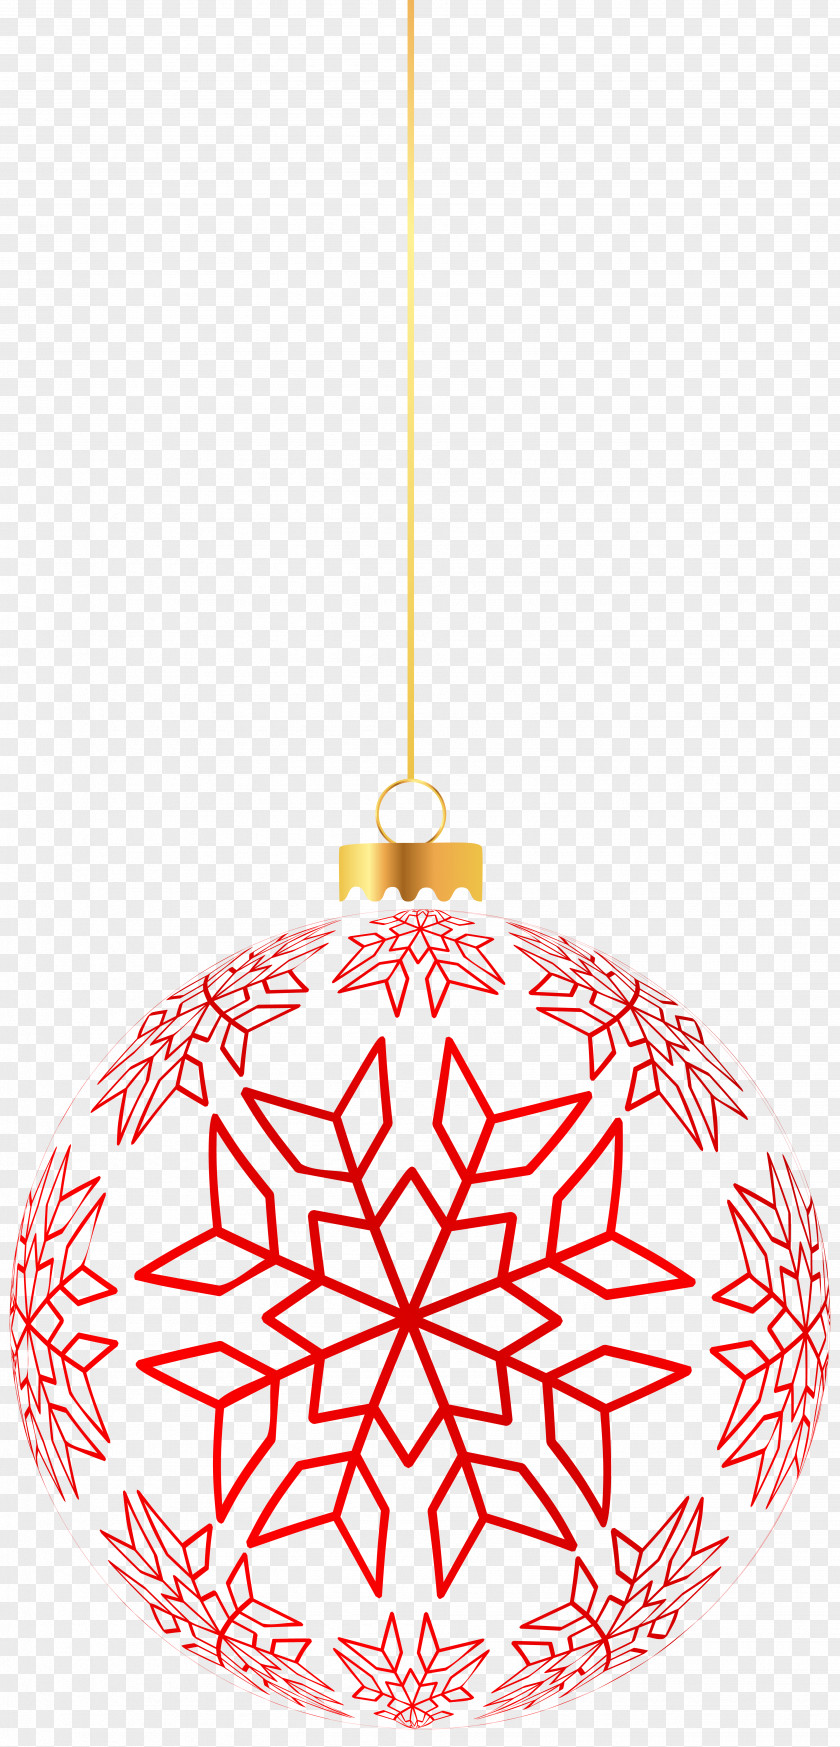 Snowflake Ristorante Controvento Christmas Ornament Clip Art PNG